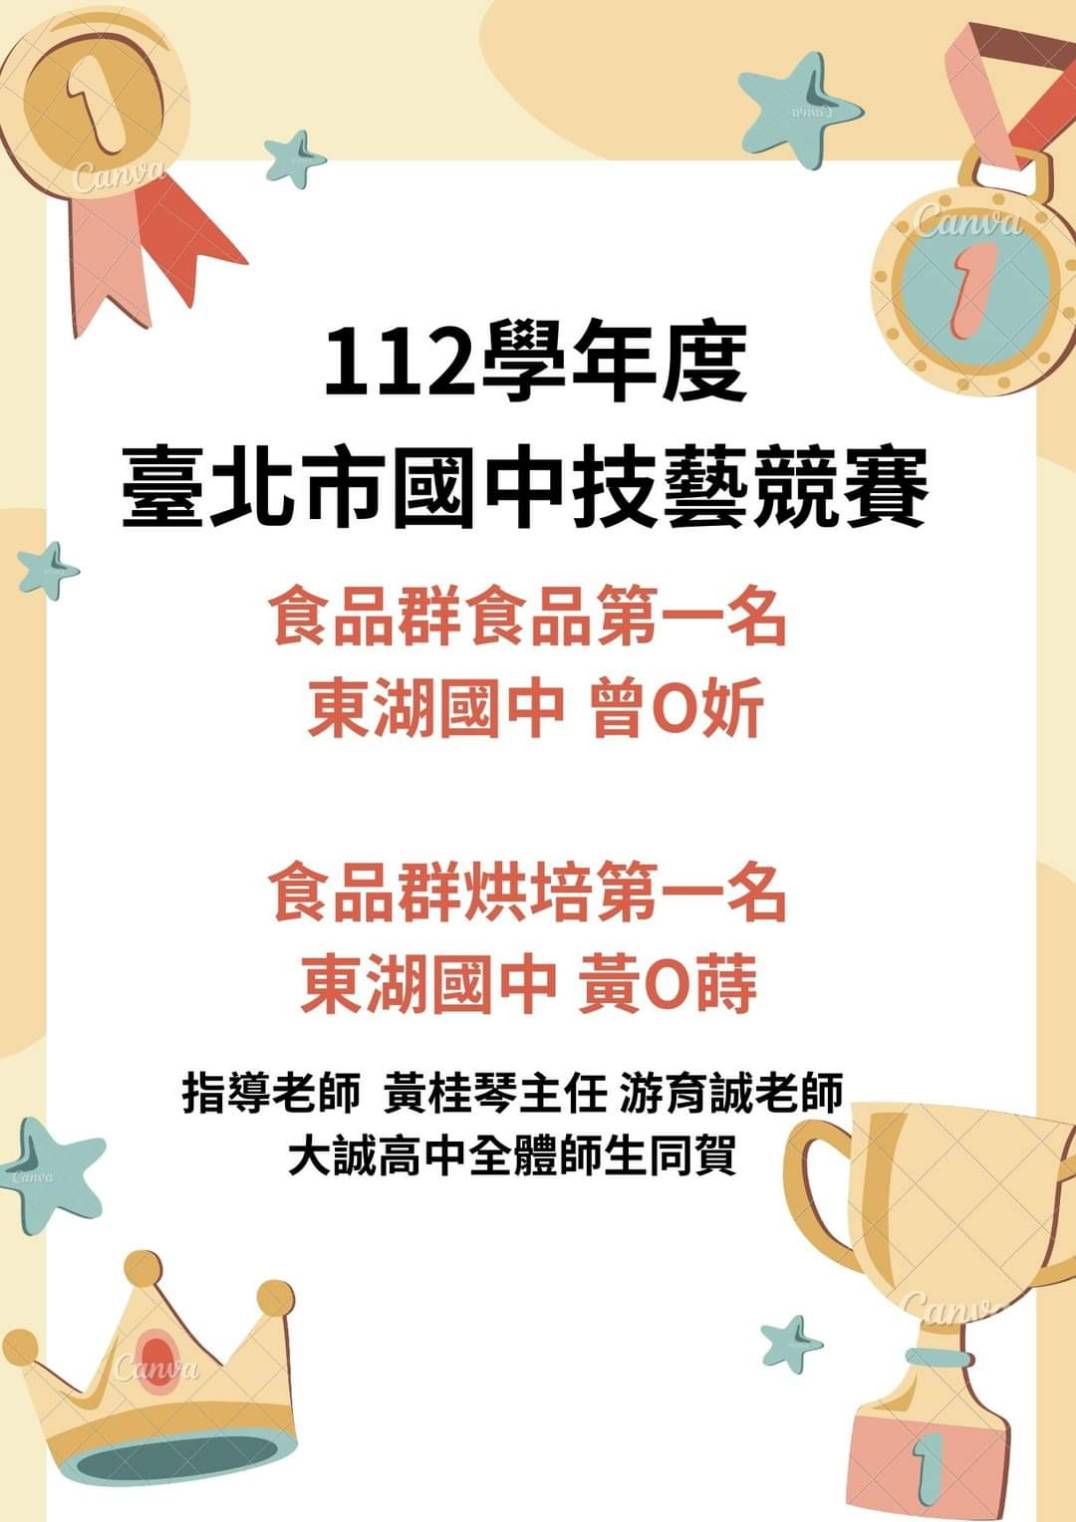 賀 東湖國中 黃同學獲得112學年度臺北市國中技藝競賽食品群烘焙第一名